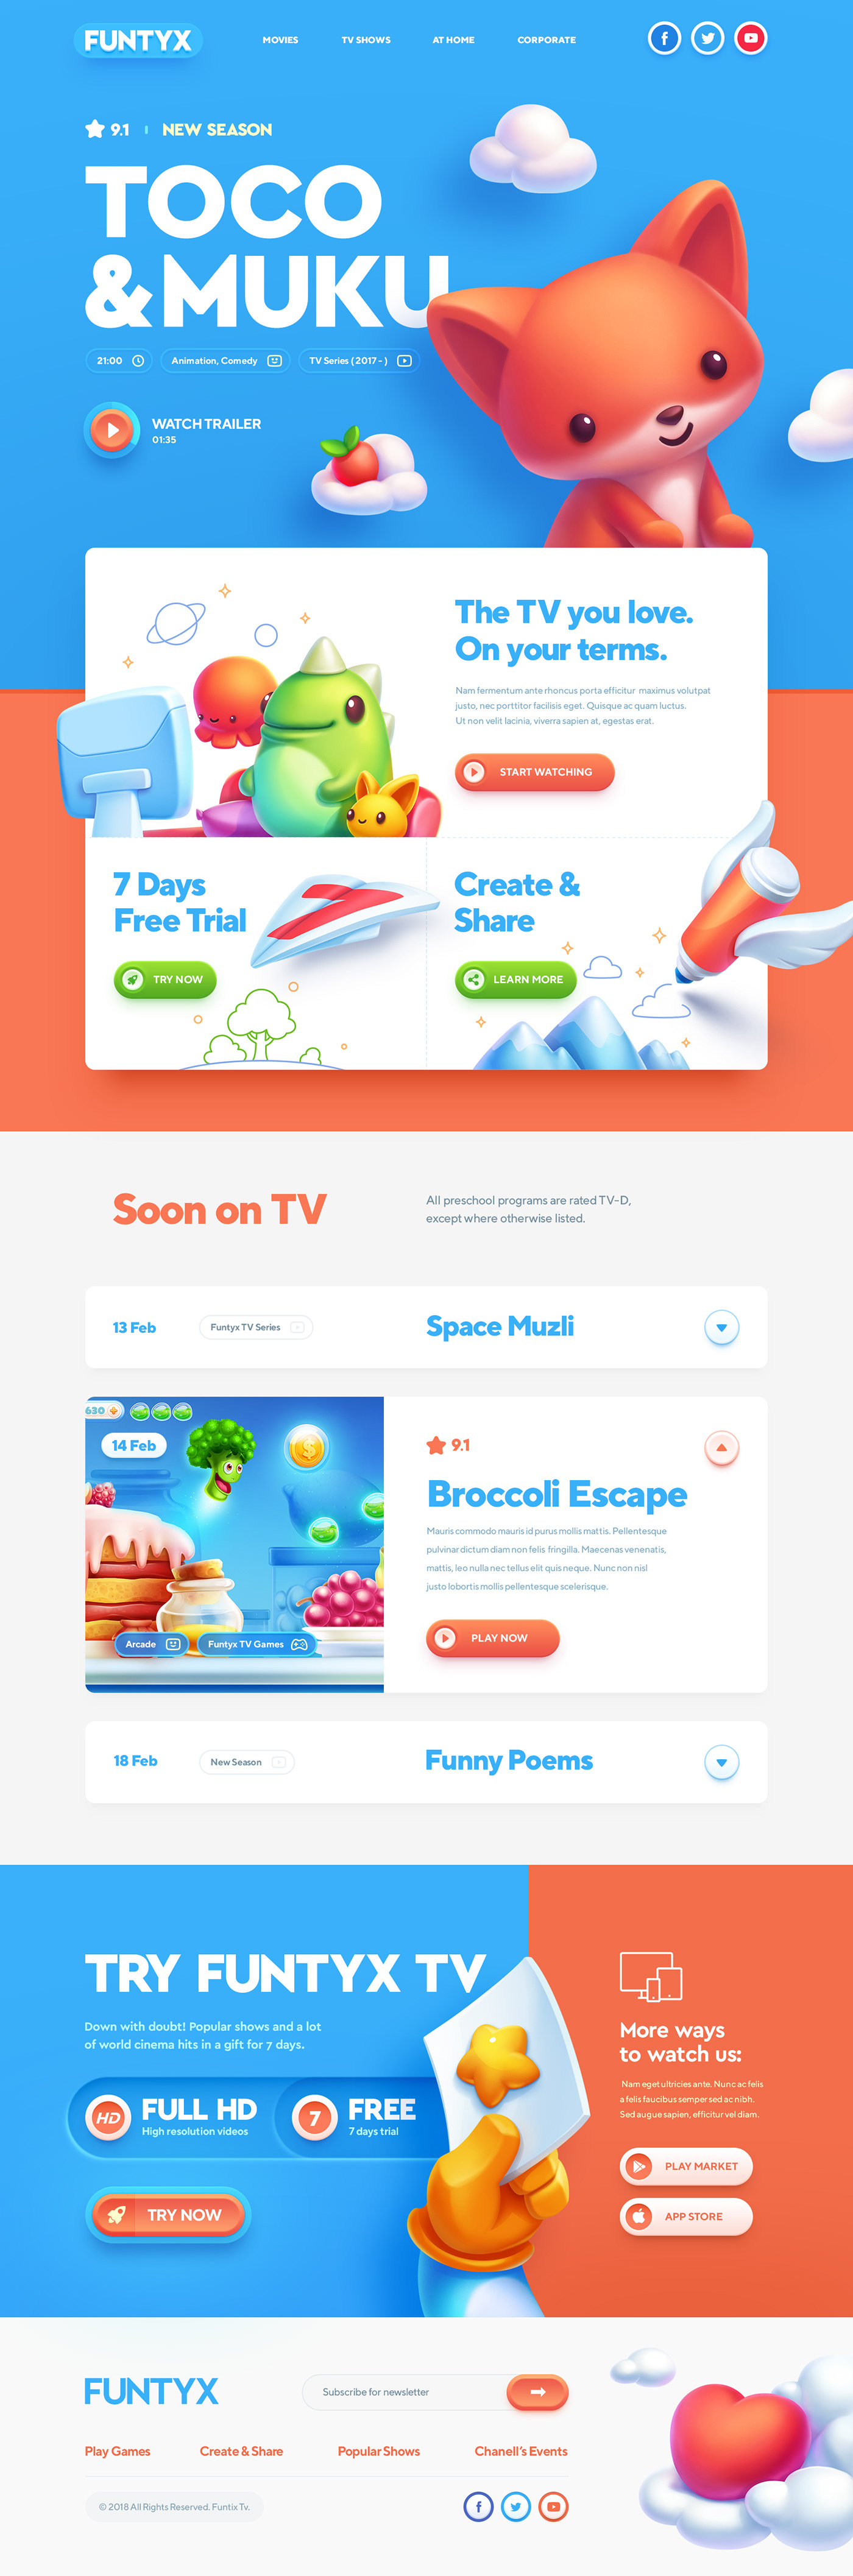 website design idea #171: Website design: Best for Kids!